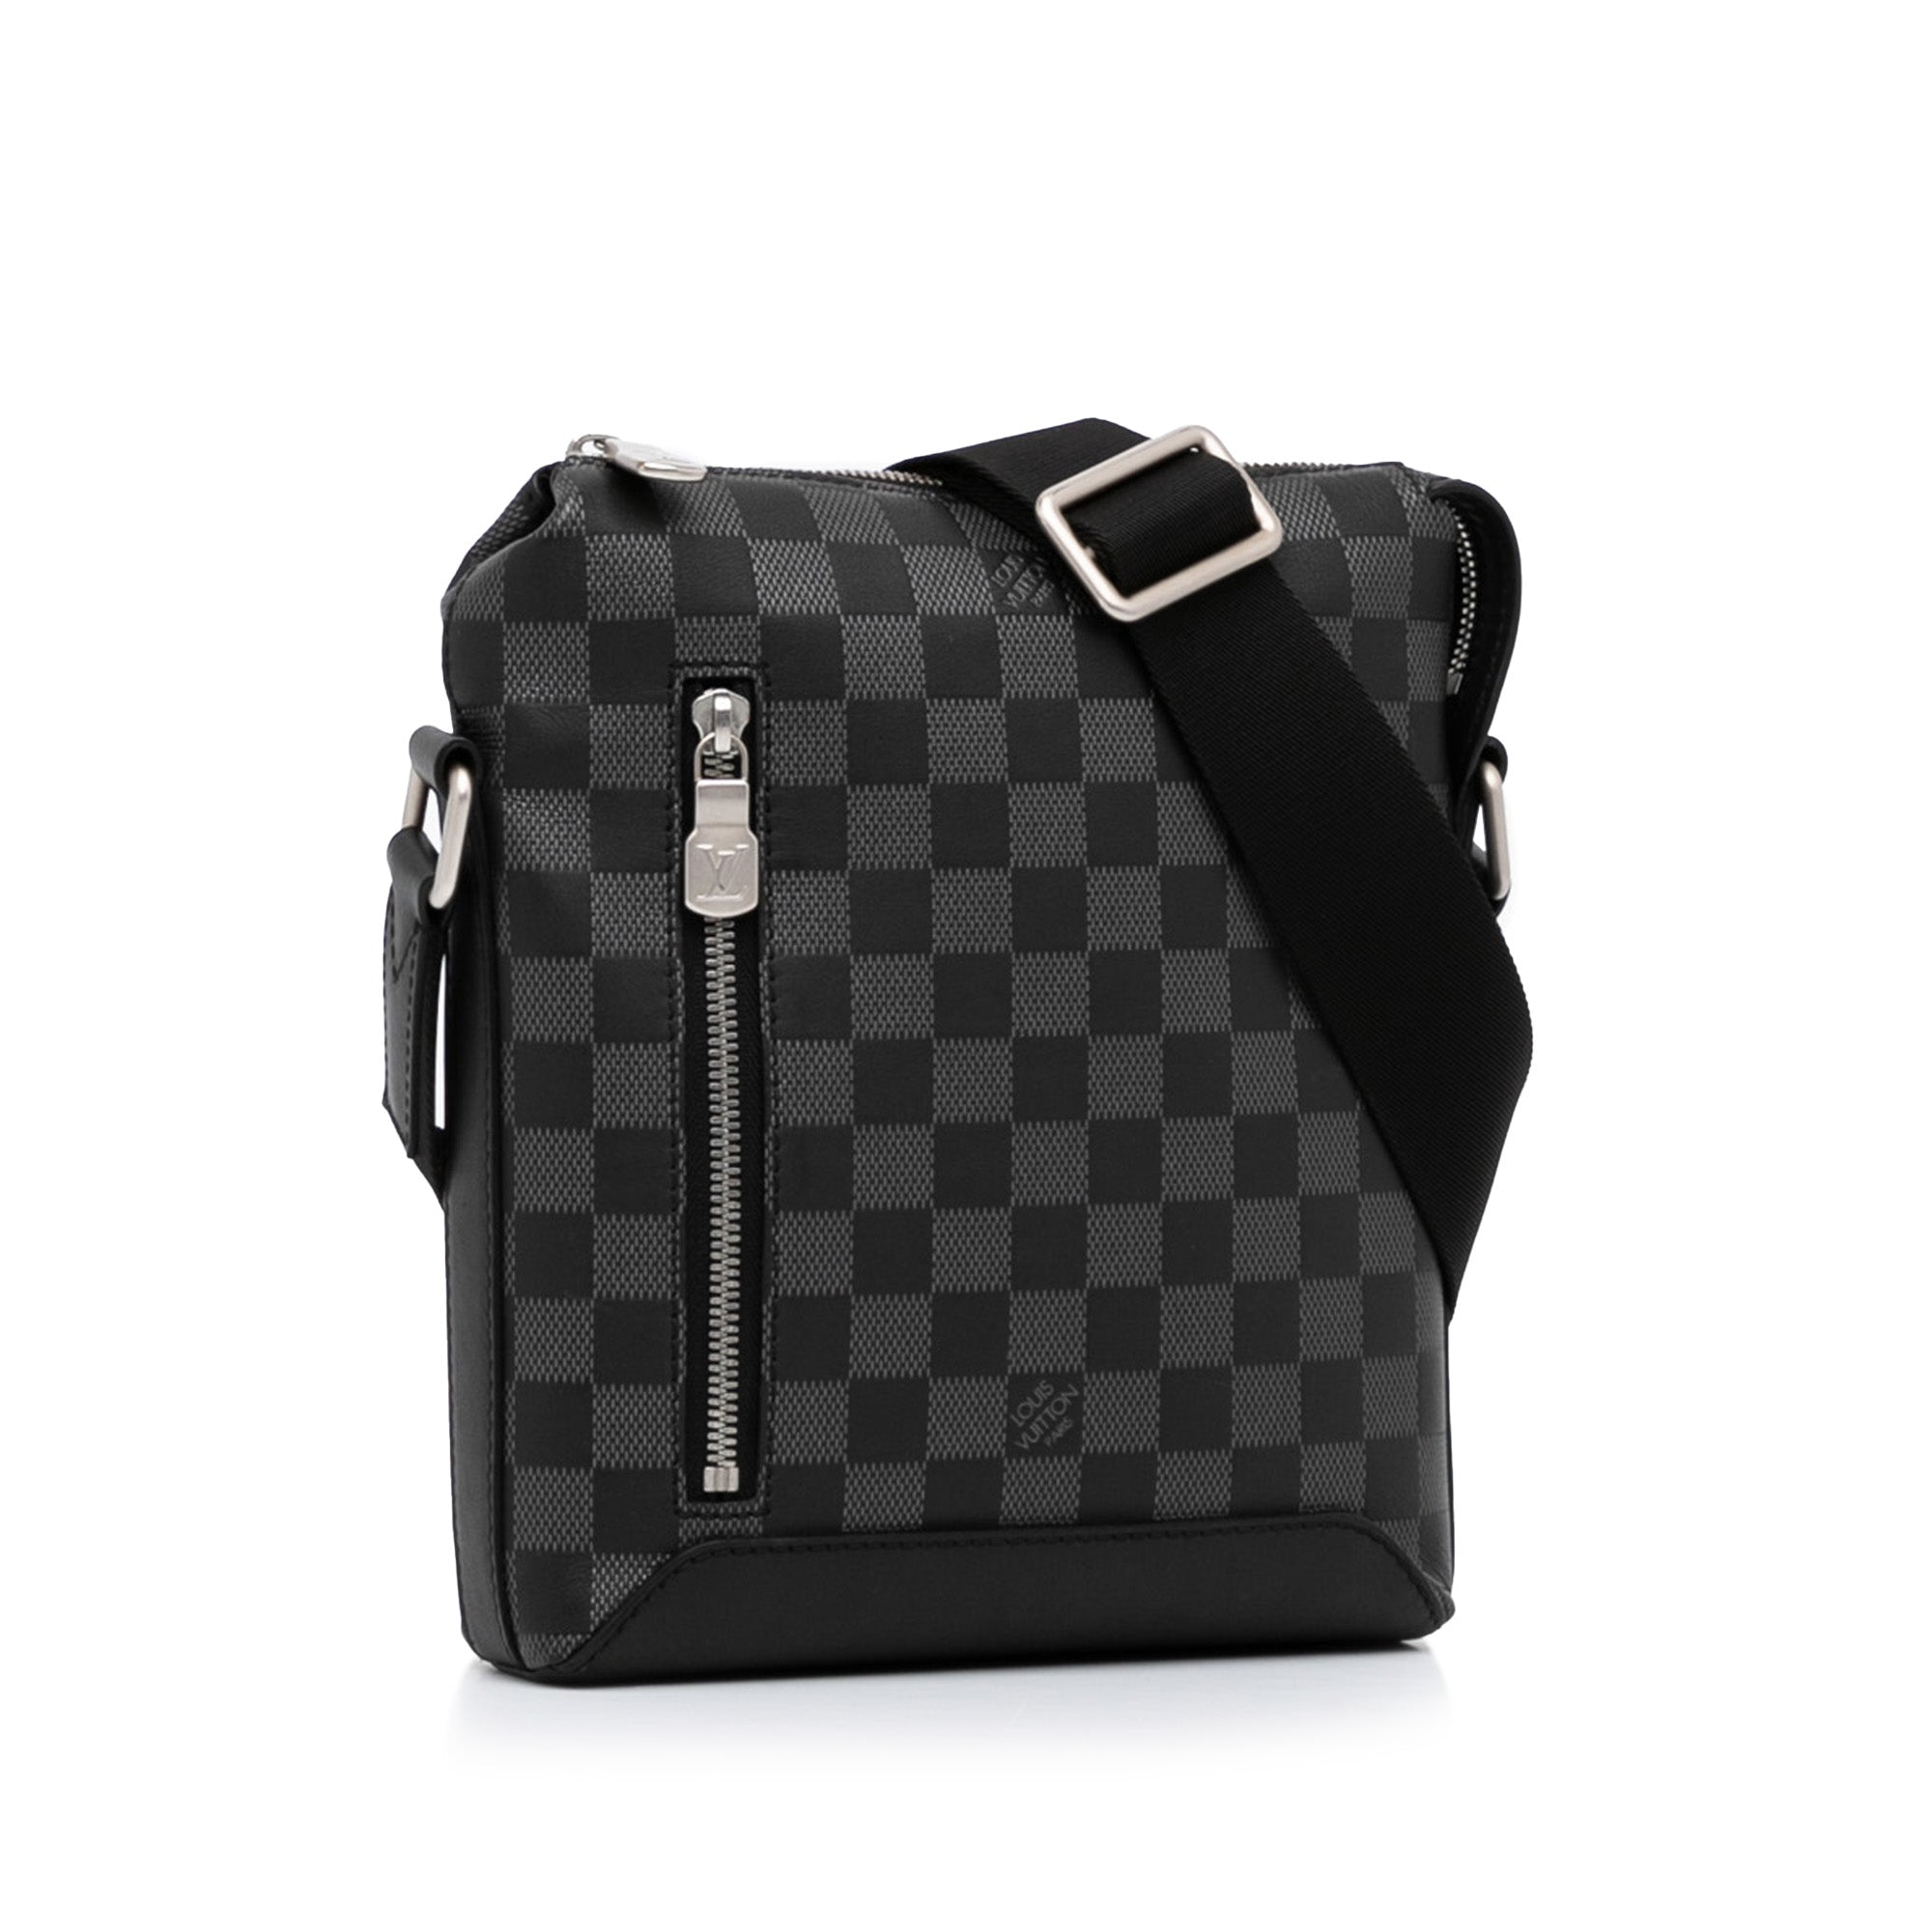 black checkered louis vuitton crossbody bag